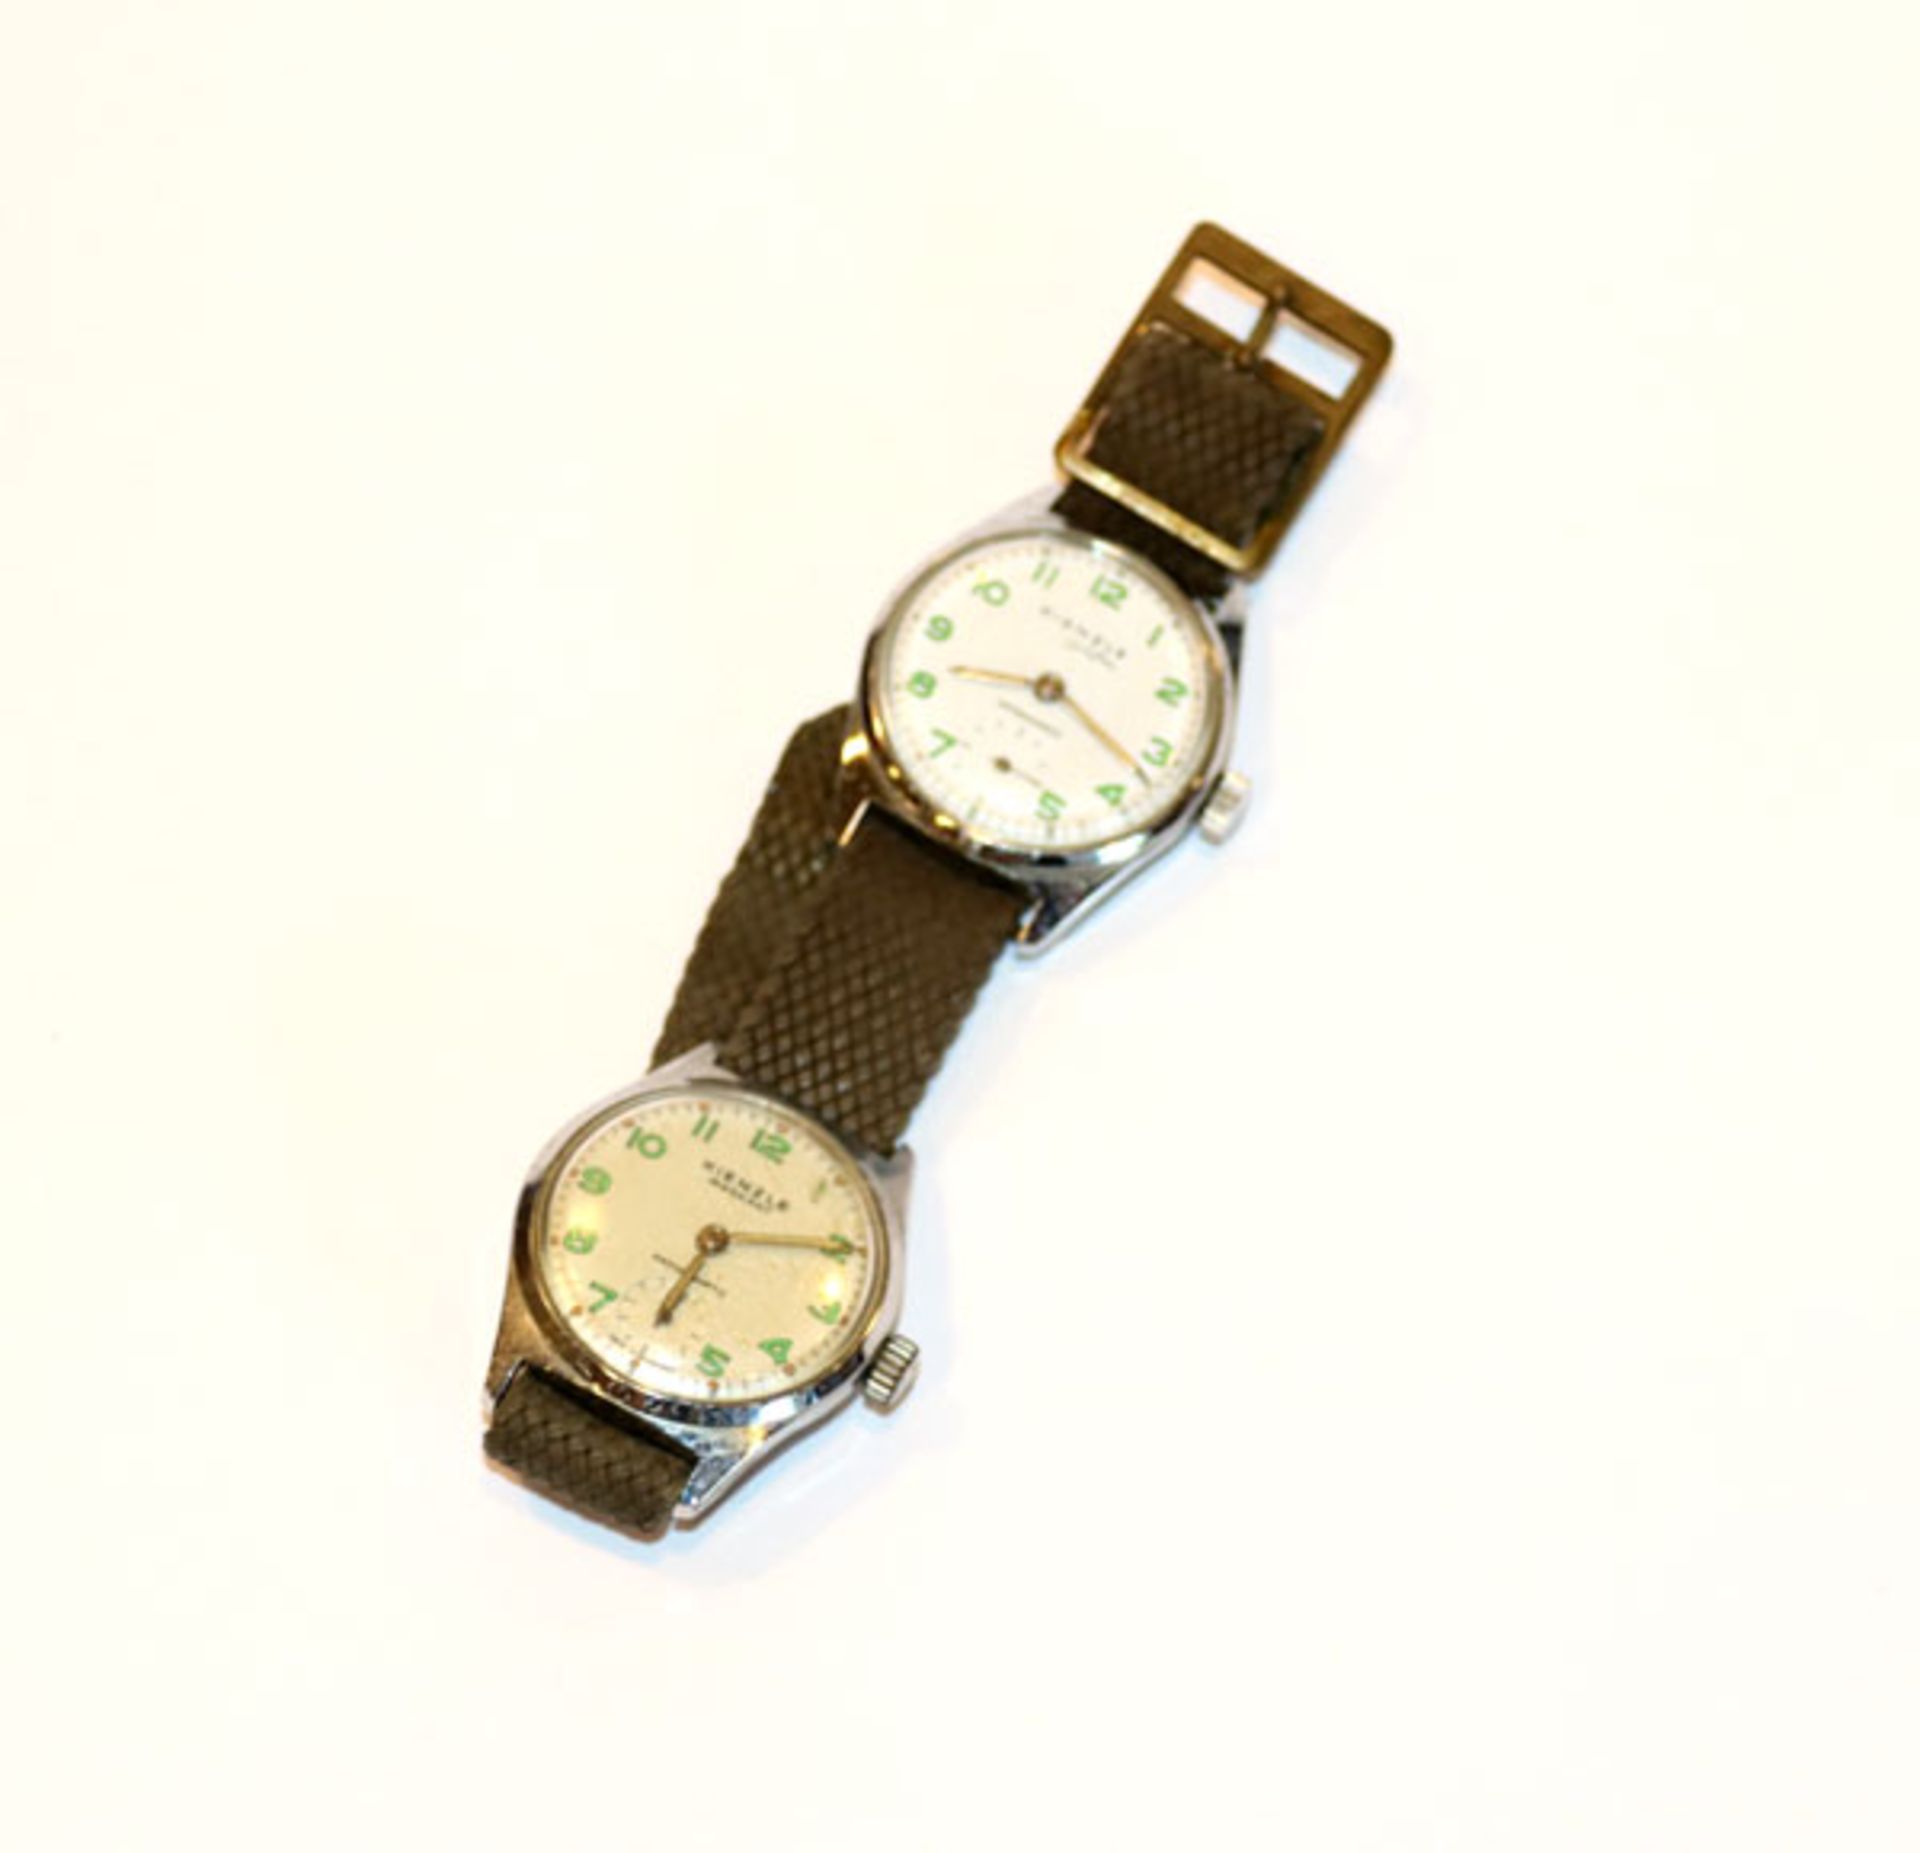 2 Kienzle Armbanduhren, Alfa und Markant, auf einem Armband, wohl intakt, Tragespuren